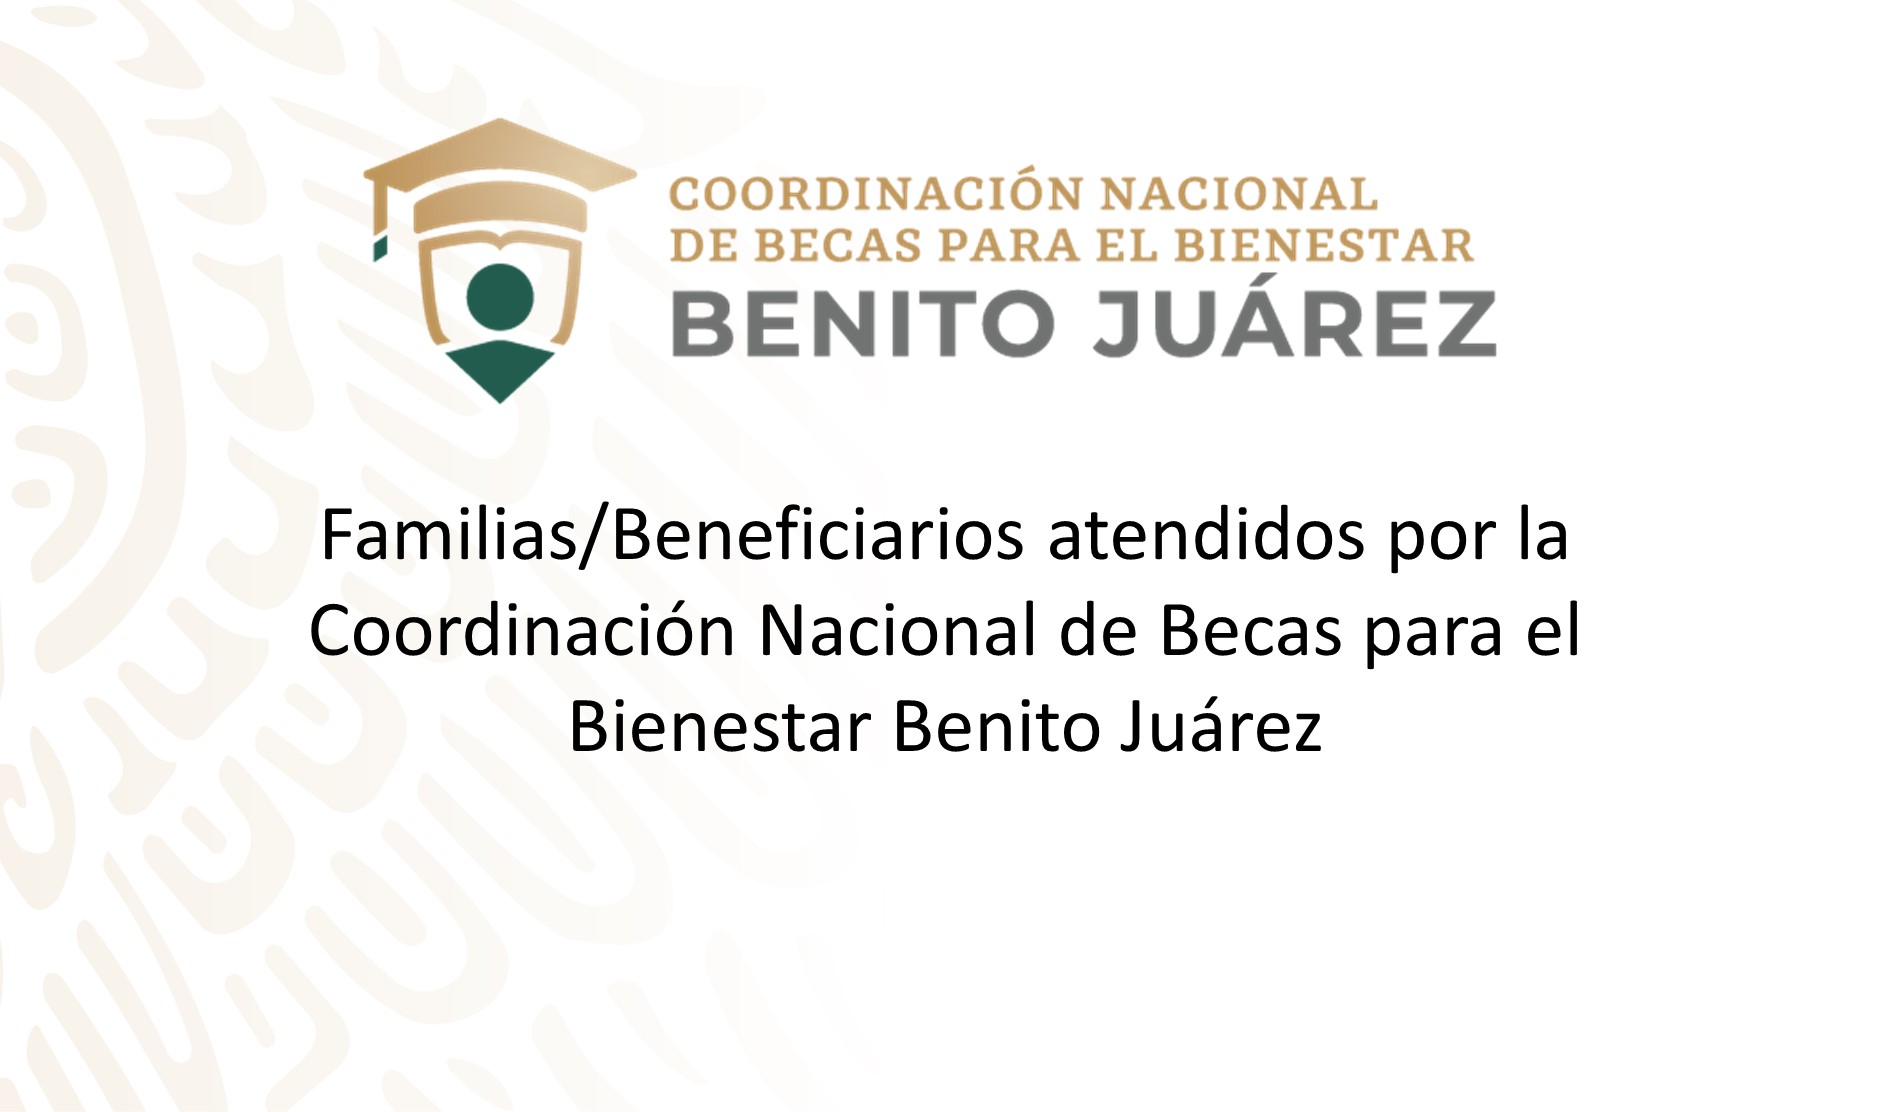 Imagen institucional con el título del documento "Familias/Beneficiarios atendidos por la CNBBBJ"